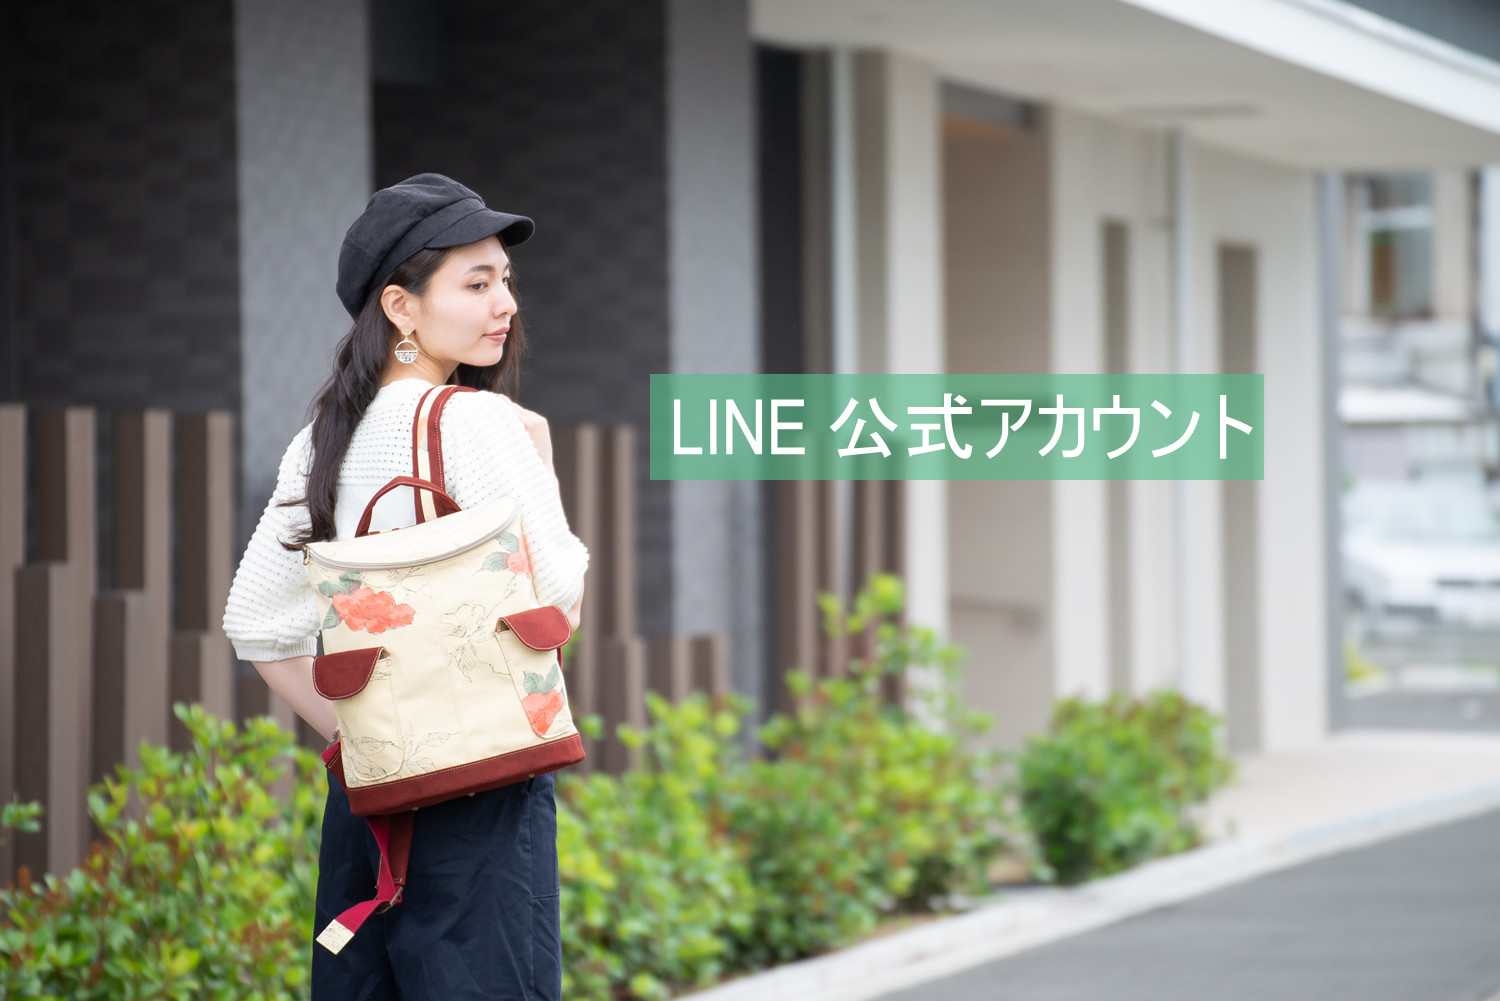 Line公式アカウント 友だち募集中 もれなく 300円offクーポンをプレゼント Zizz 着物と革でつくるバッグのお店